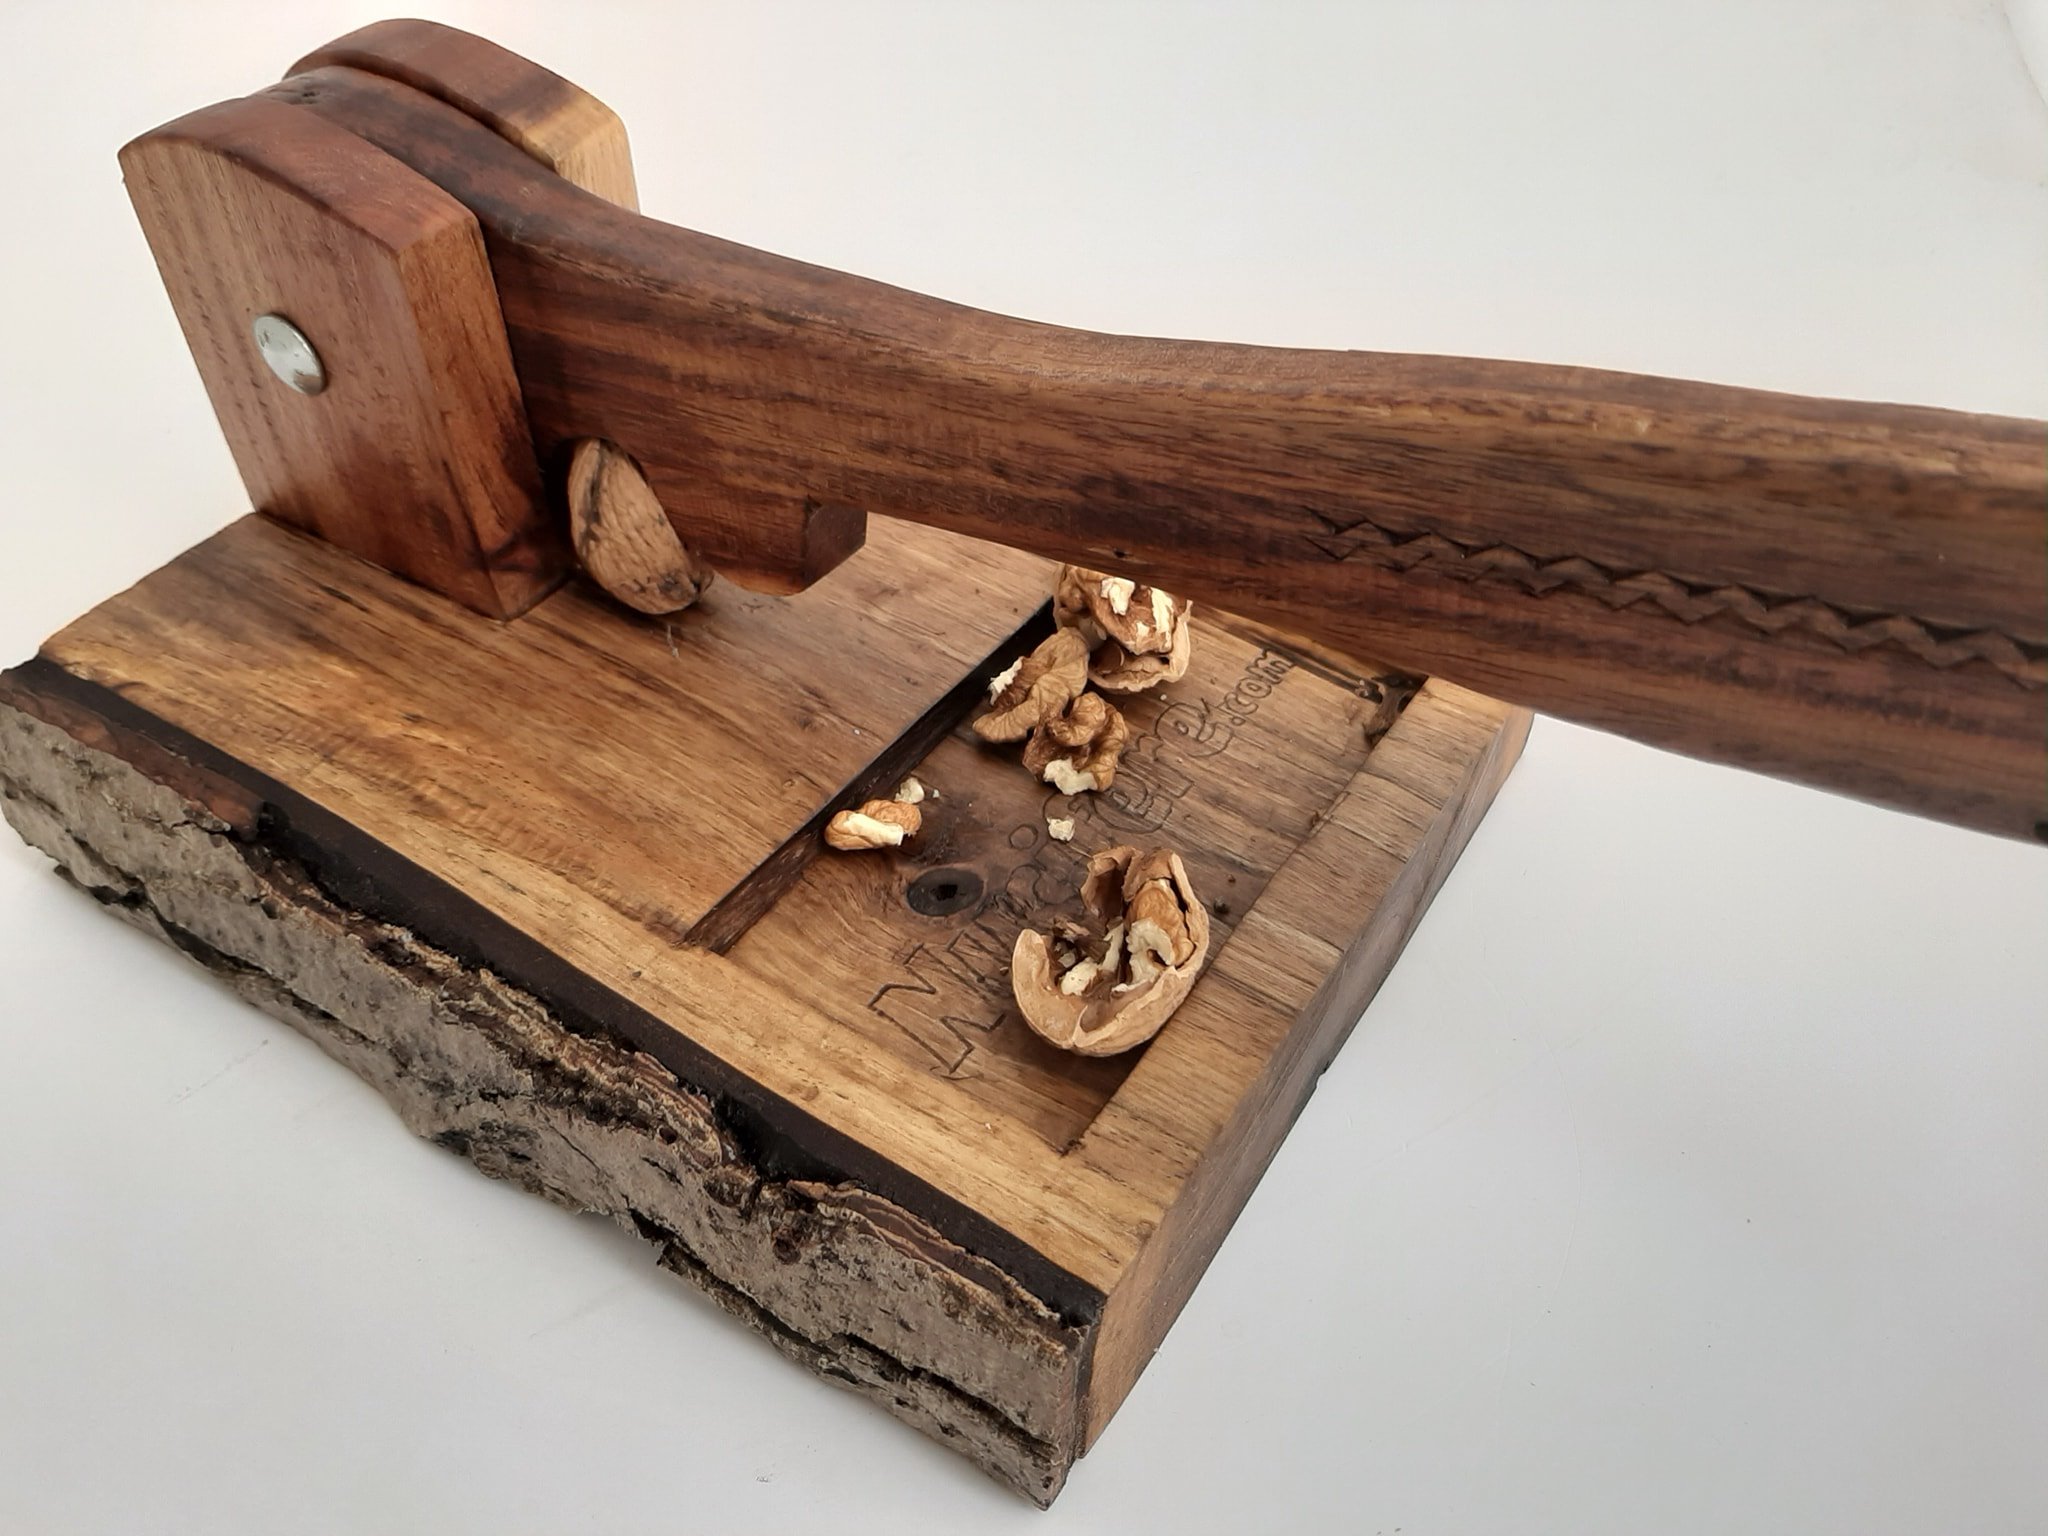 Spărgător de nuci personalizat, realizat din lemn de nuc